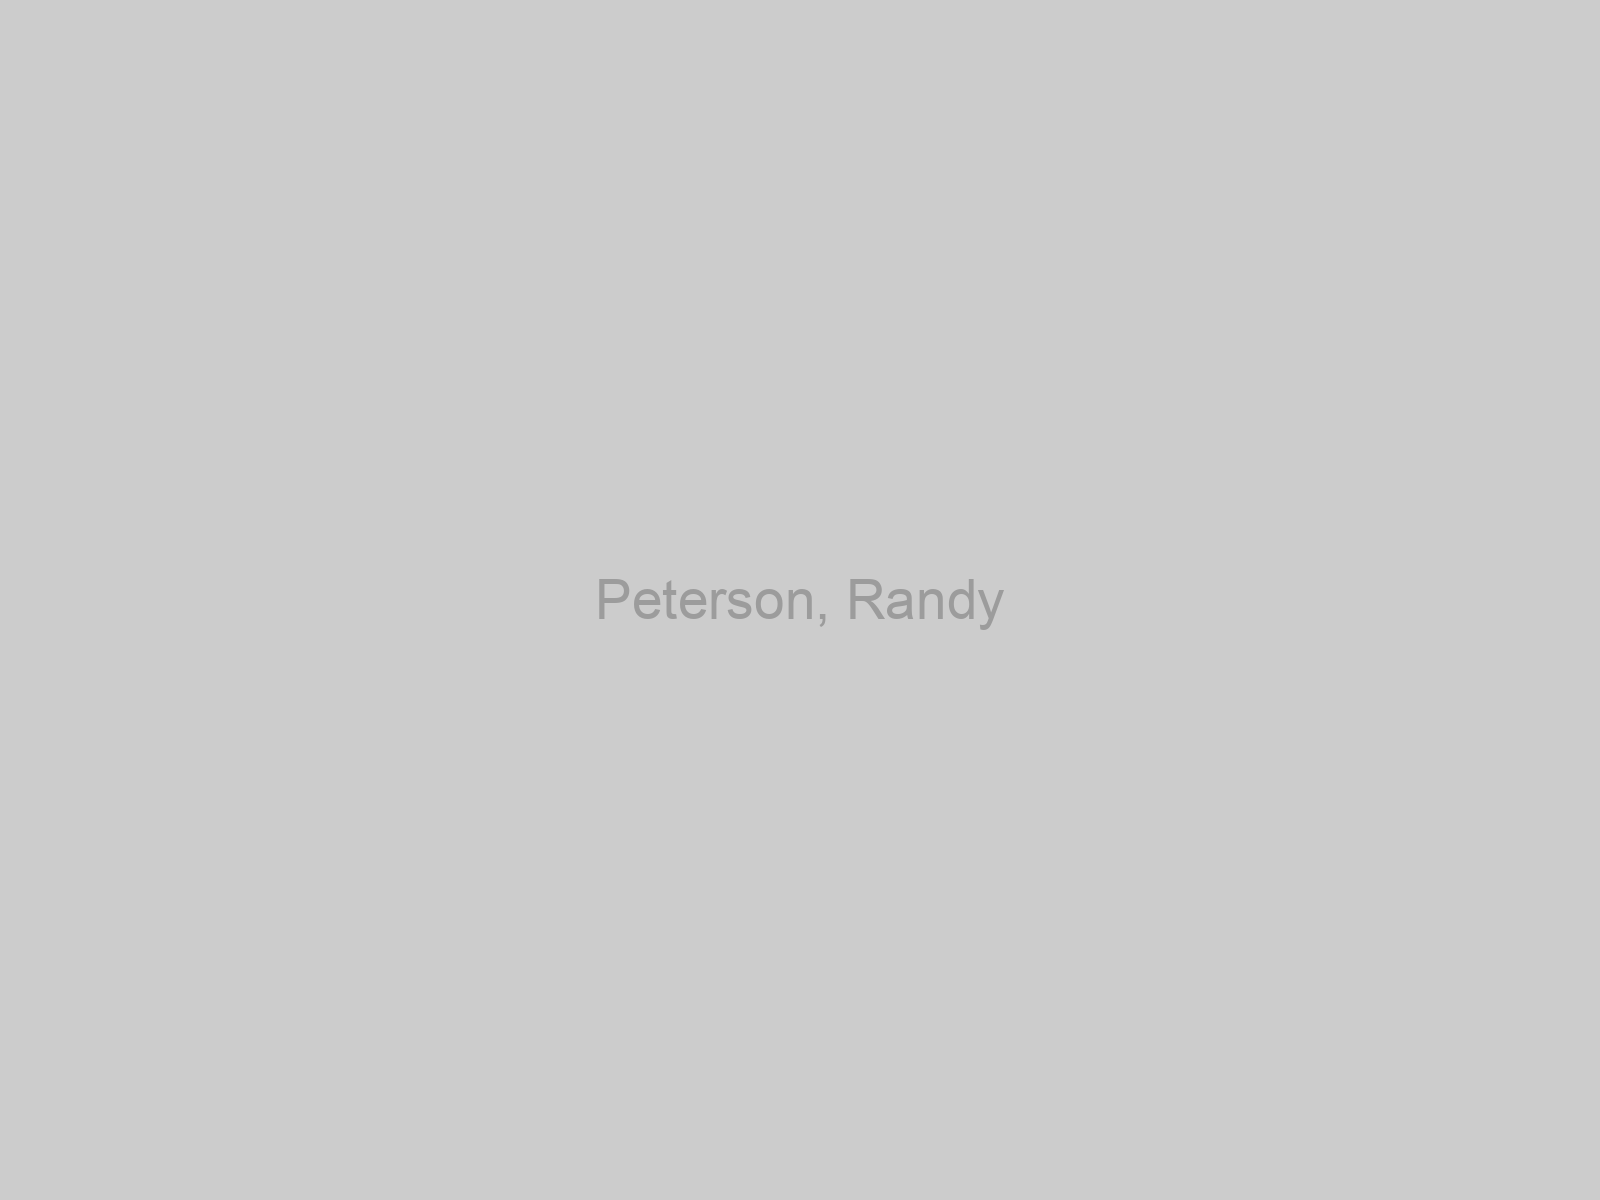 Peterson, Randy